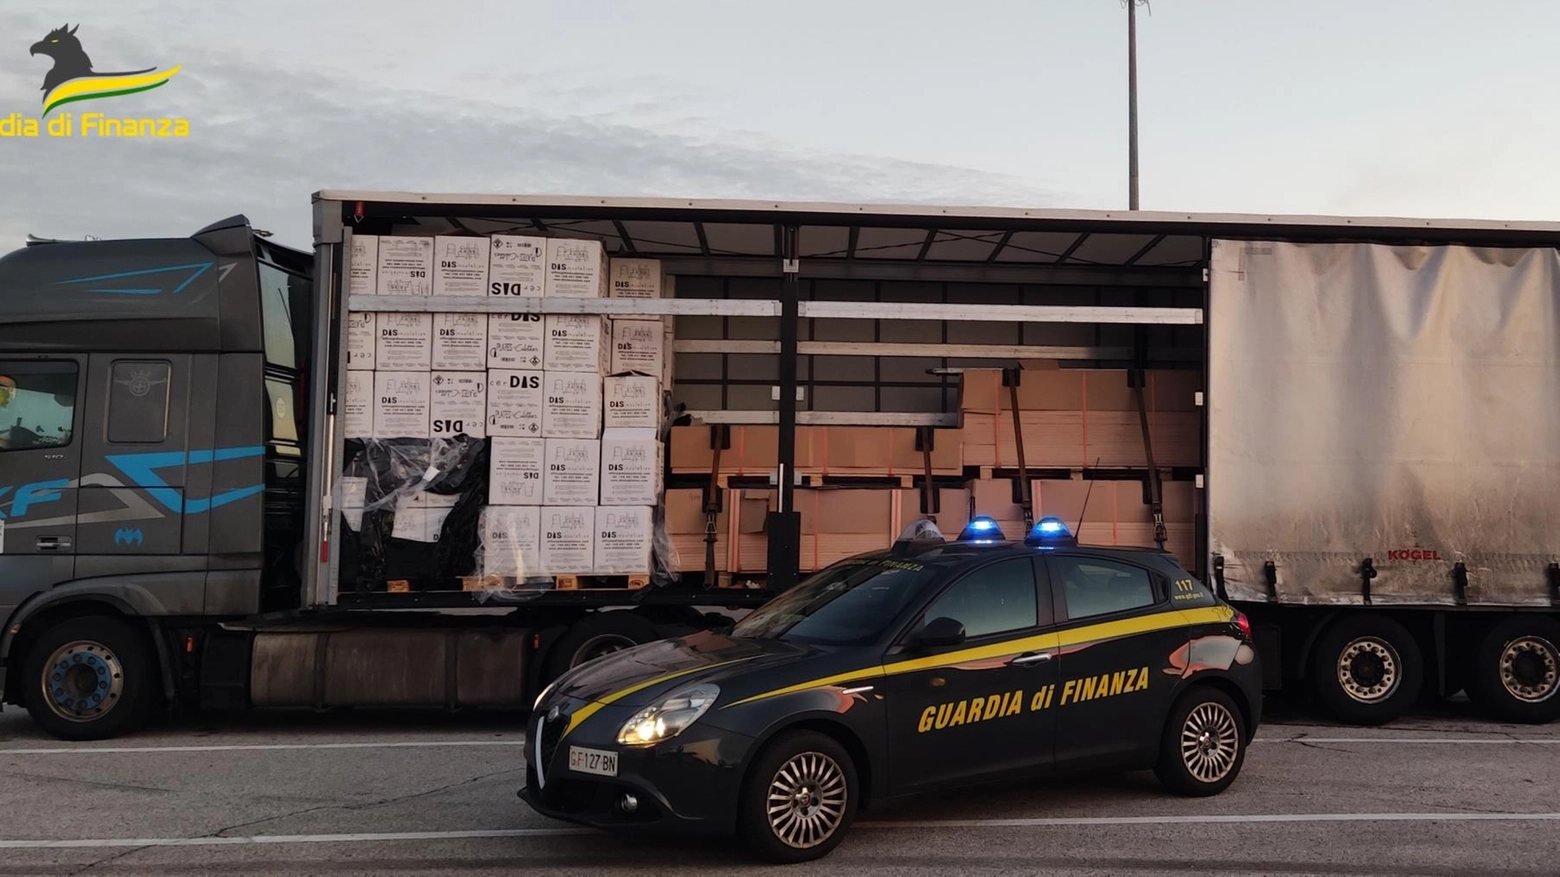 Un controllo su un camion al casello di Venezia Est ha permesso di trovare 3 tonnellate di tabacchi irregolari dal valore di 720mila euro